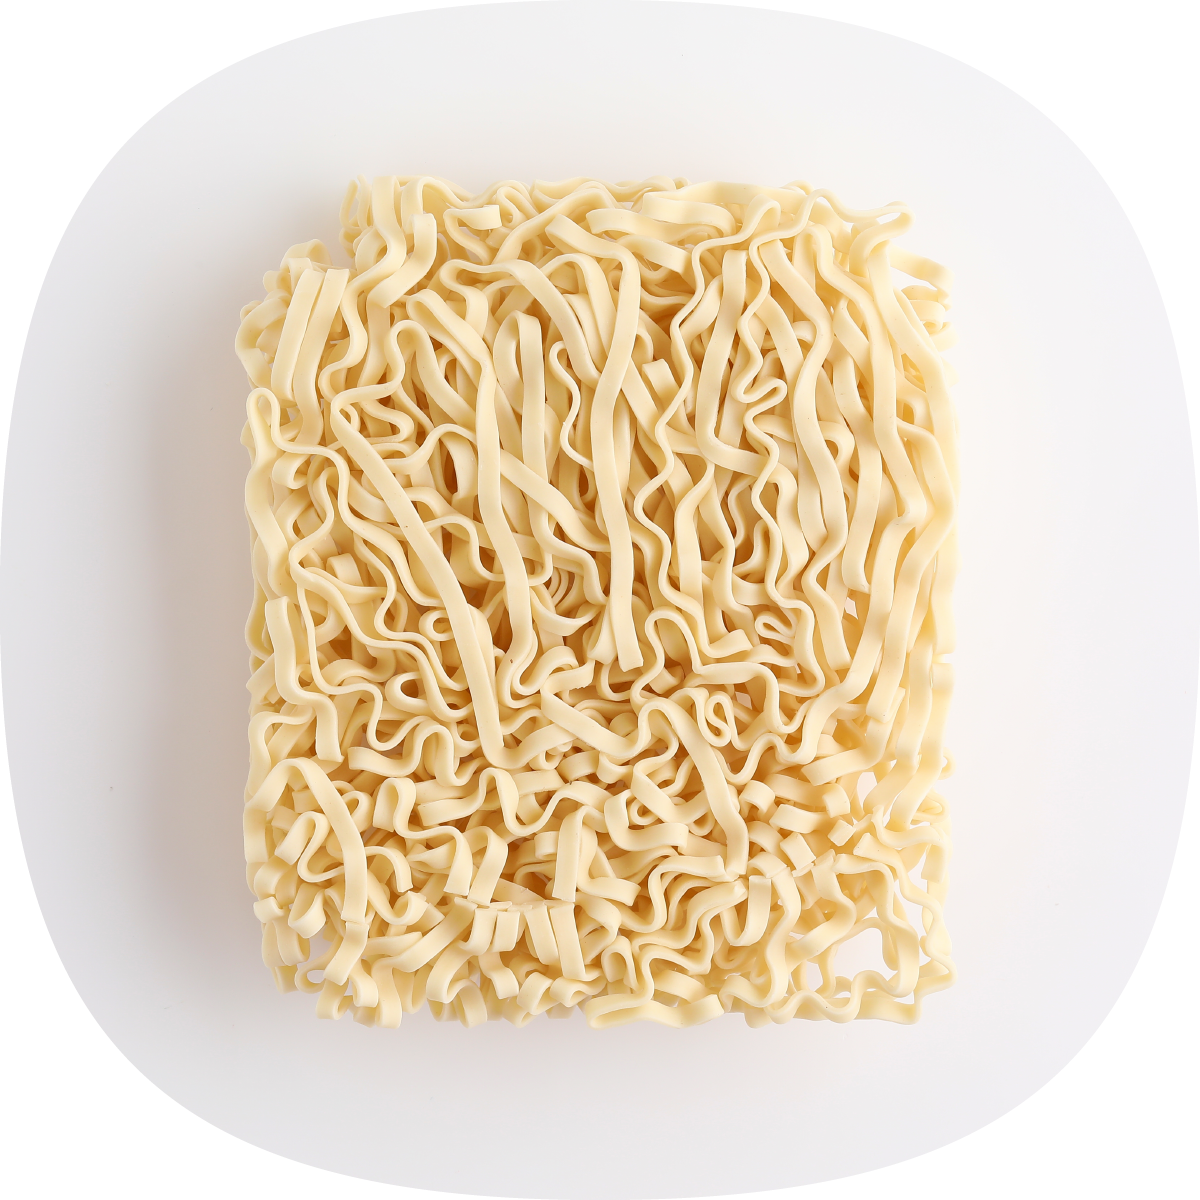 Sun Dried QQ Noodles